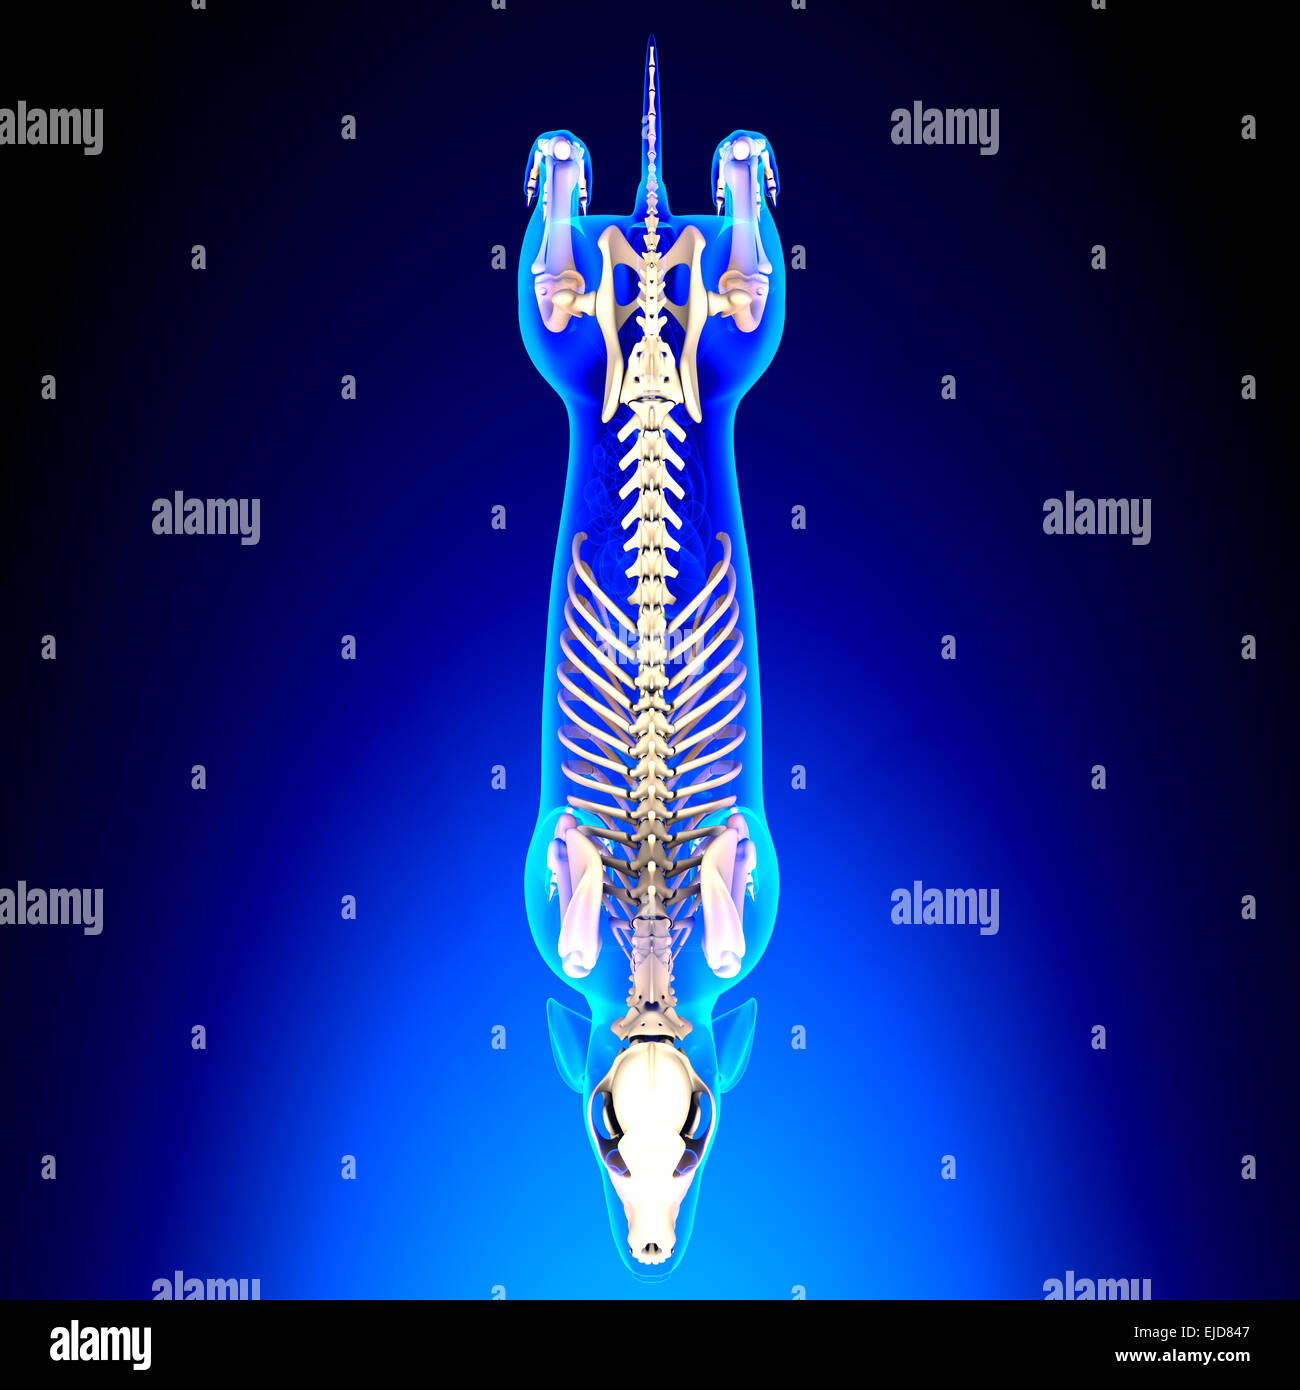 Squelette de chien - Canis lupus familiaris Anatomie - Vue de dessus Banque D'Images